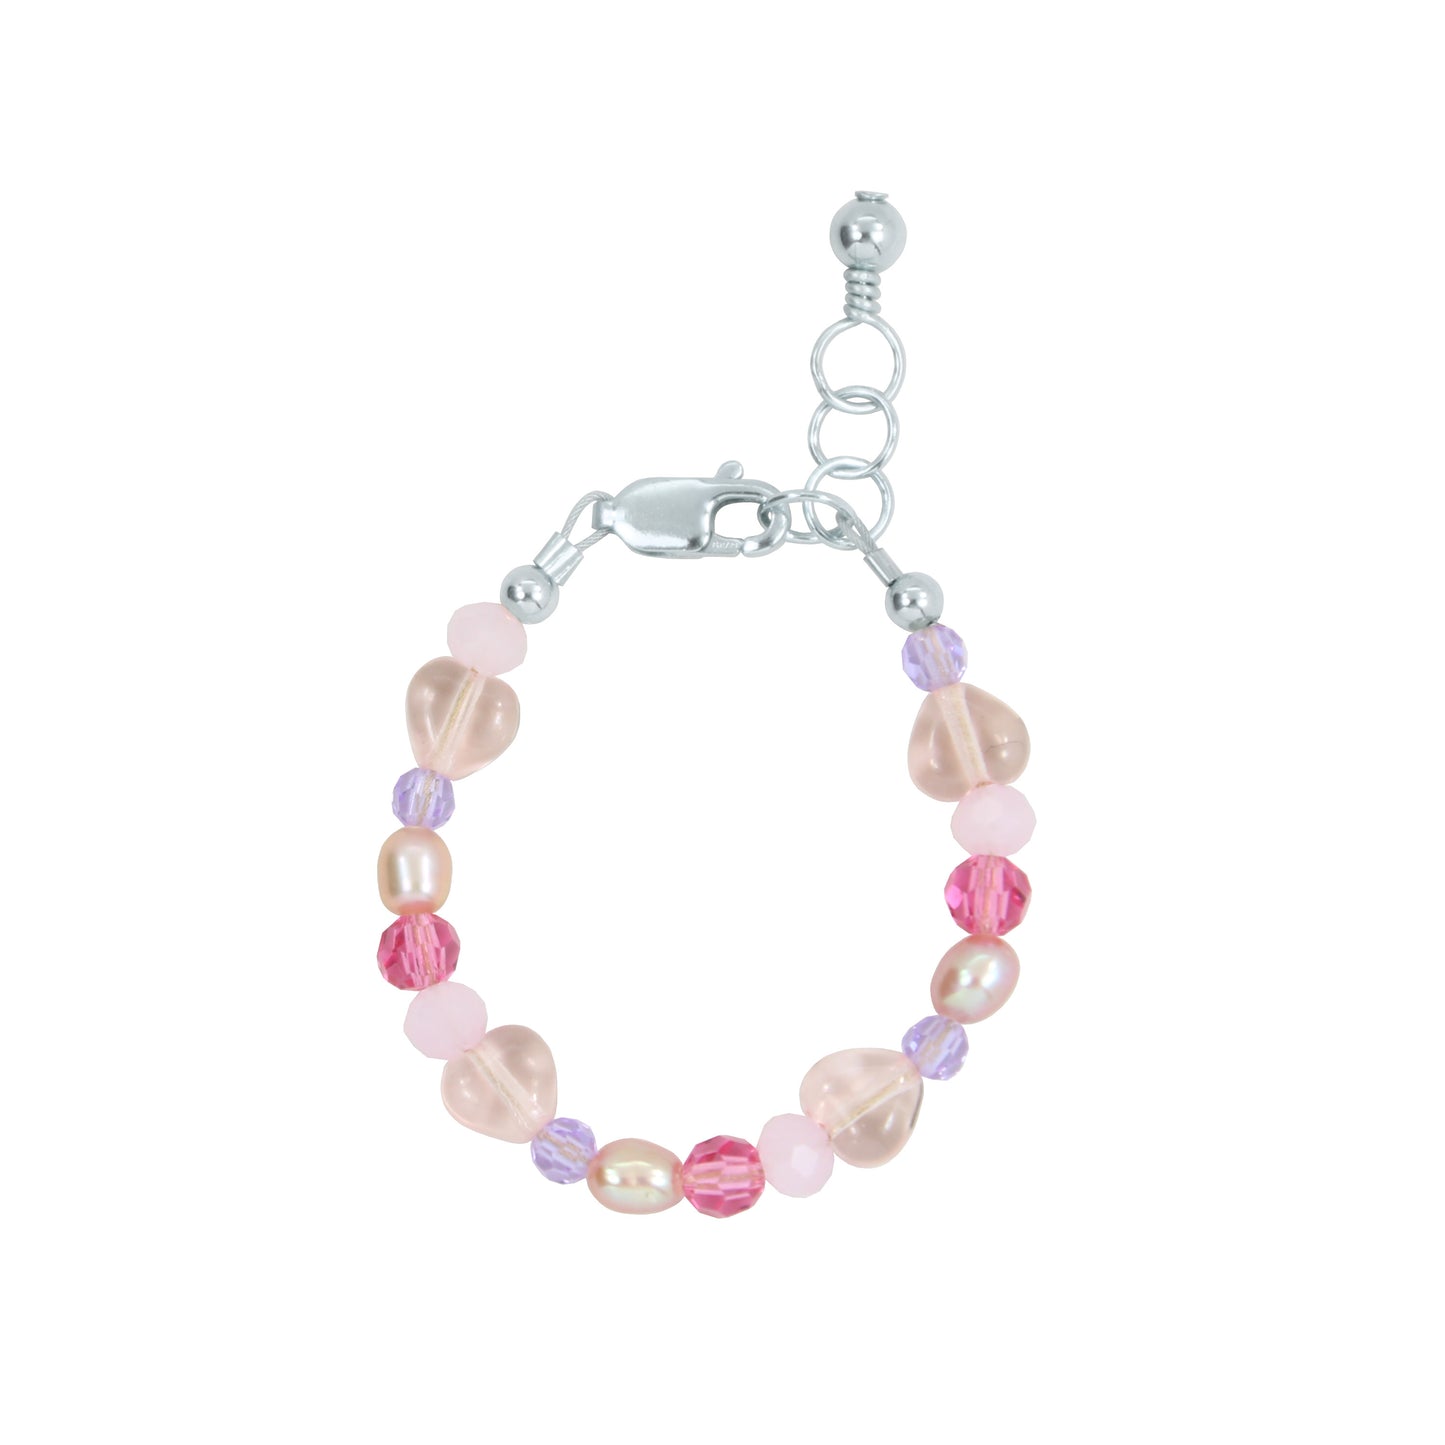 Lover Baby Bracelet (4MM beads)